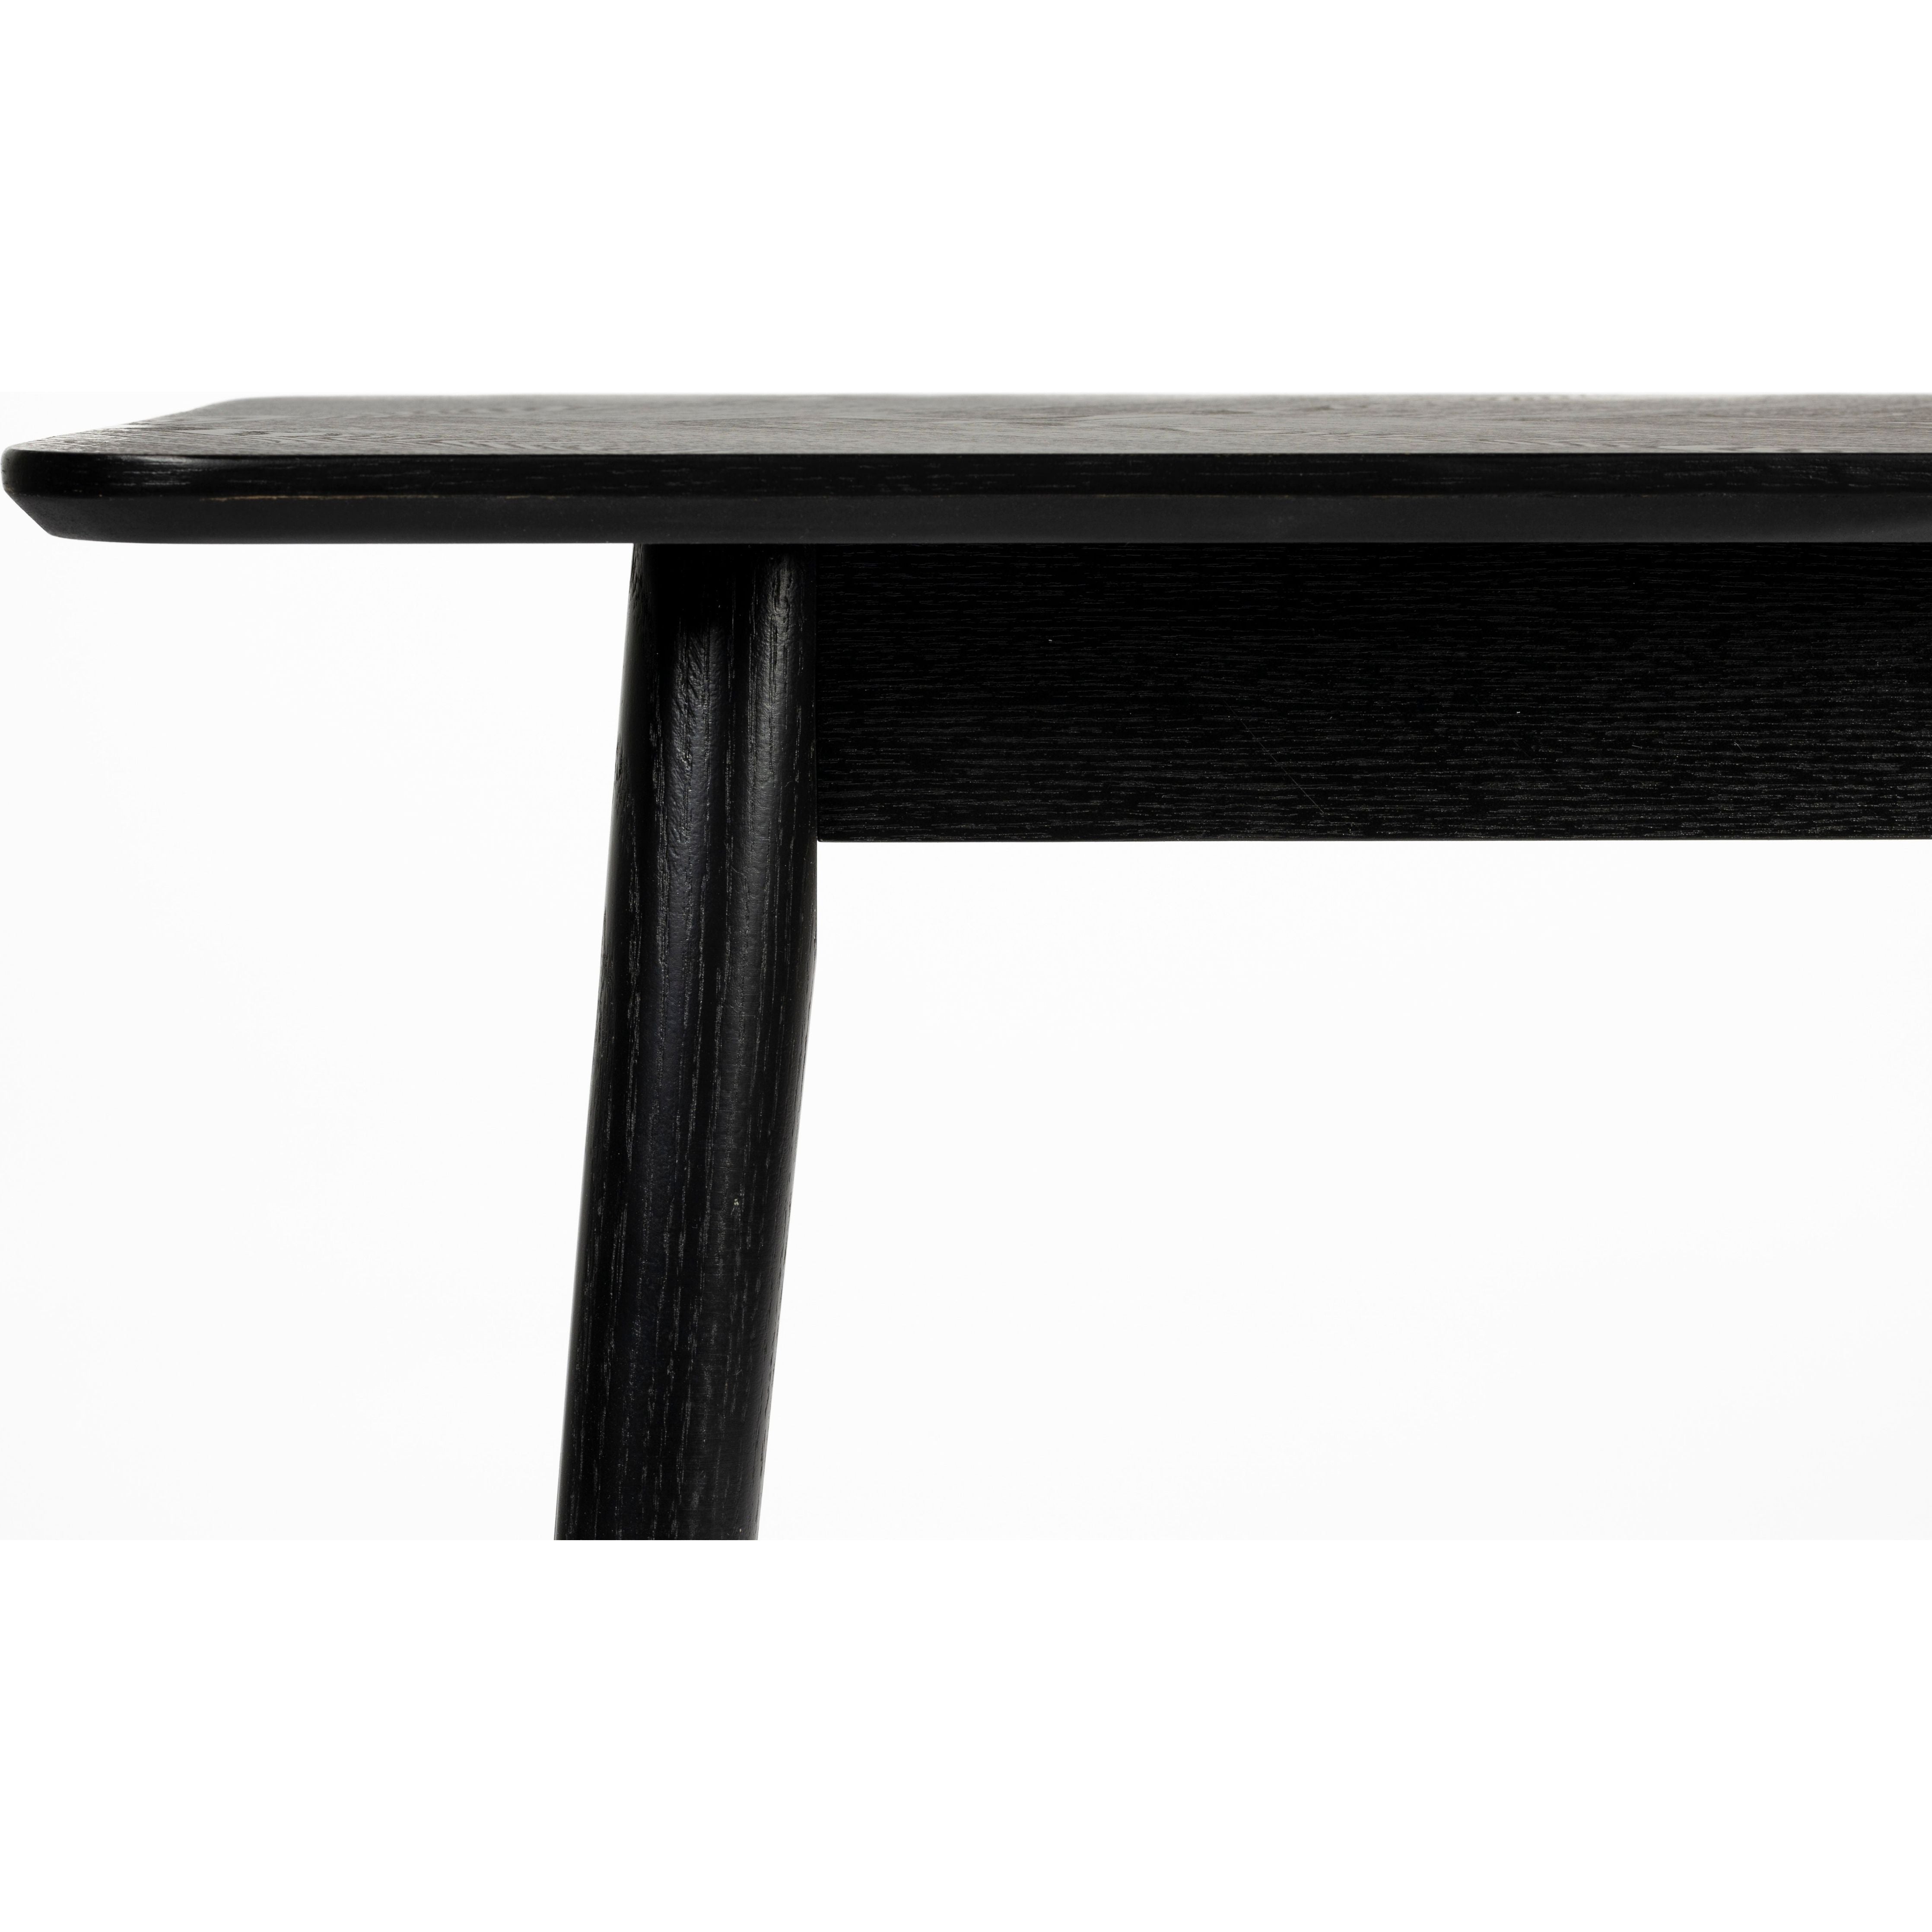 Console table fabio 120x40 black